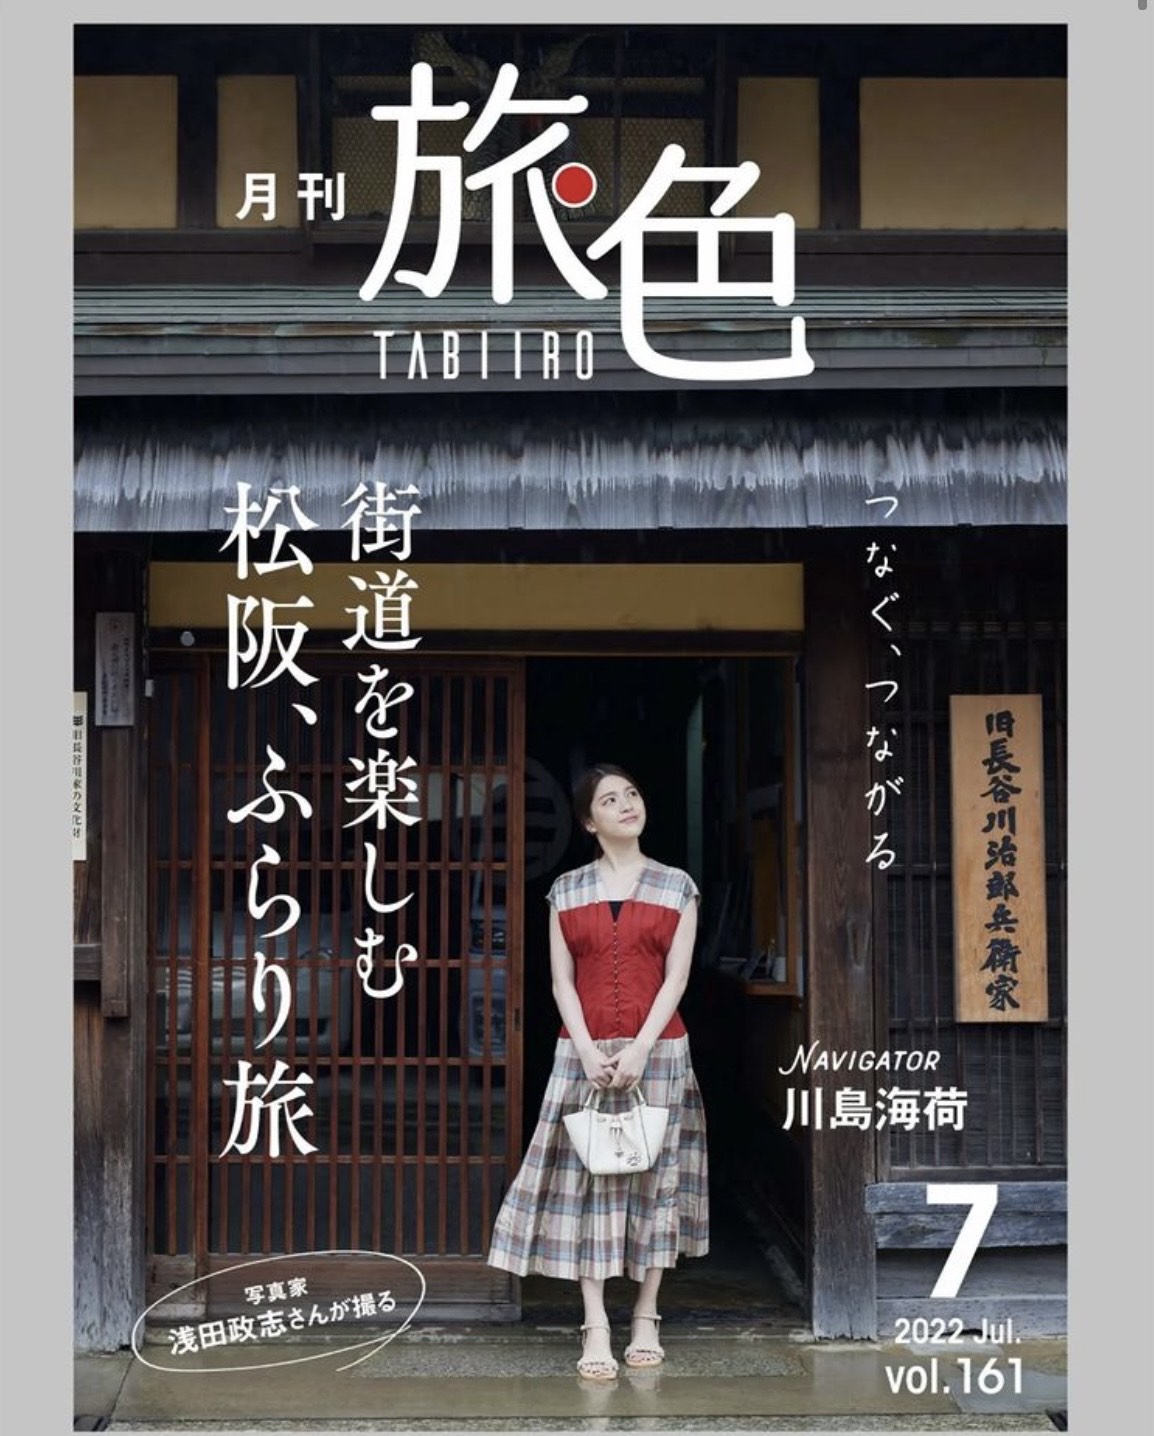 松阪市 が「月刊旅色 」とタイアップした「旅色FO-CAL Magazine」冊子が完成しました。